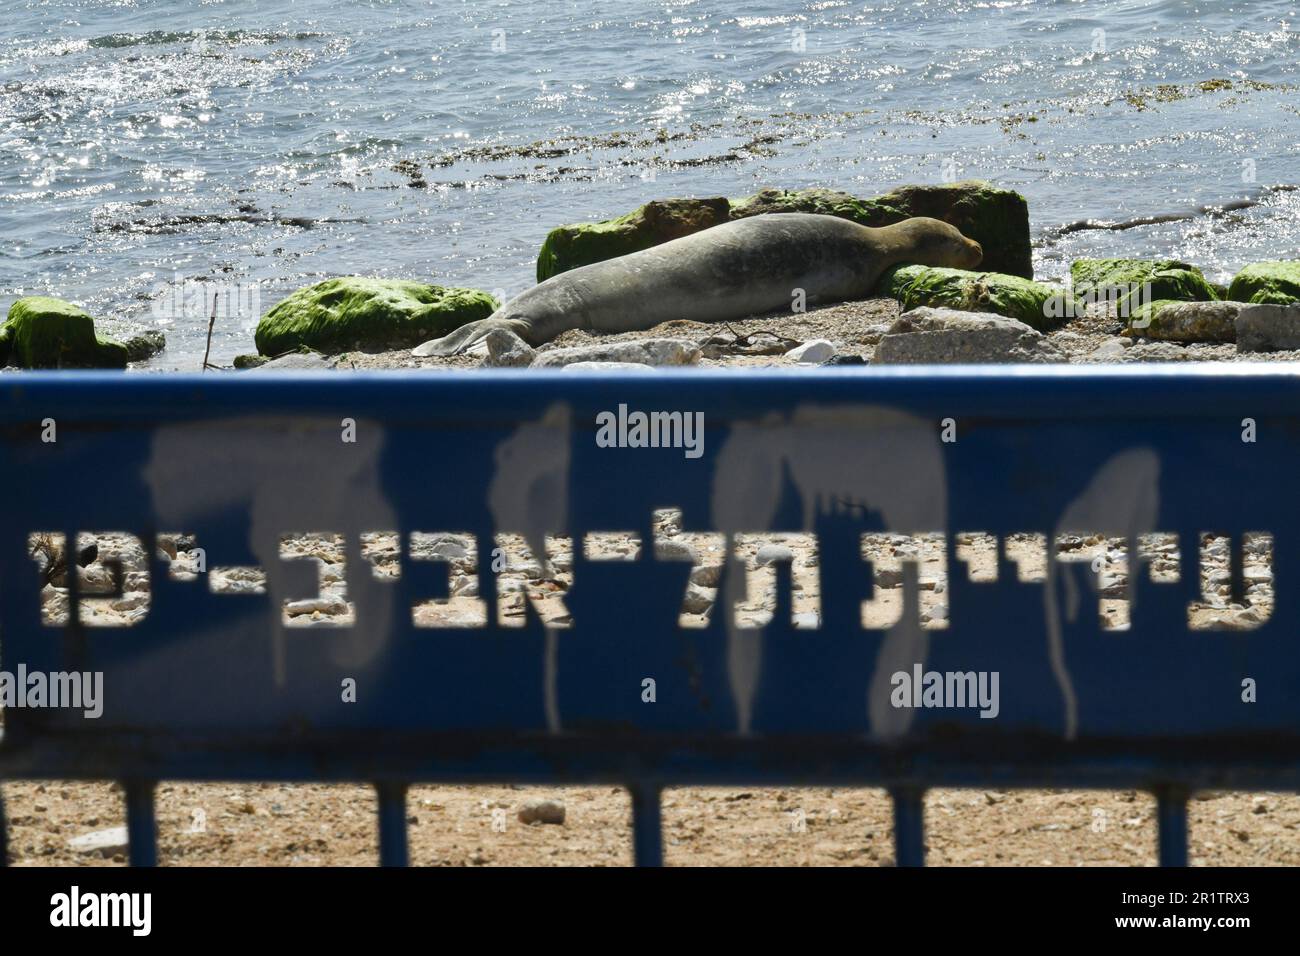 230515) -- TEL AVIV, 15 de mayo de 2023 (Xinhua) -- Una foca monje  mediterránea se encuentra a la orilla del mar en la playa de Jaffa en Tel  Aviv, Israel, el